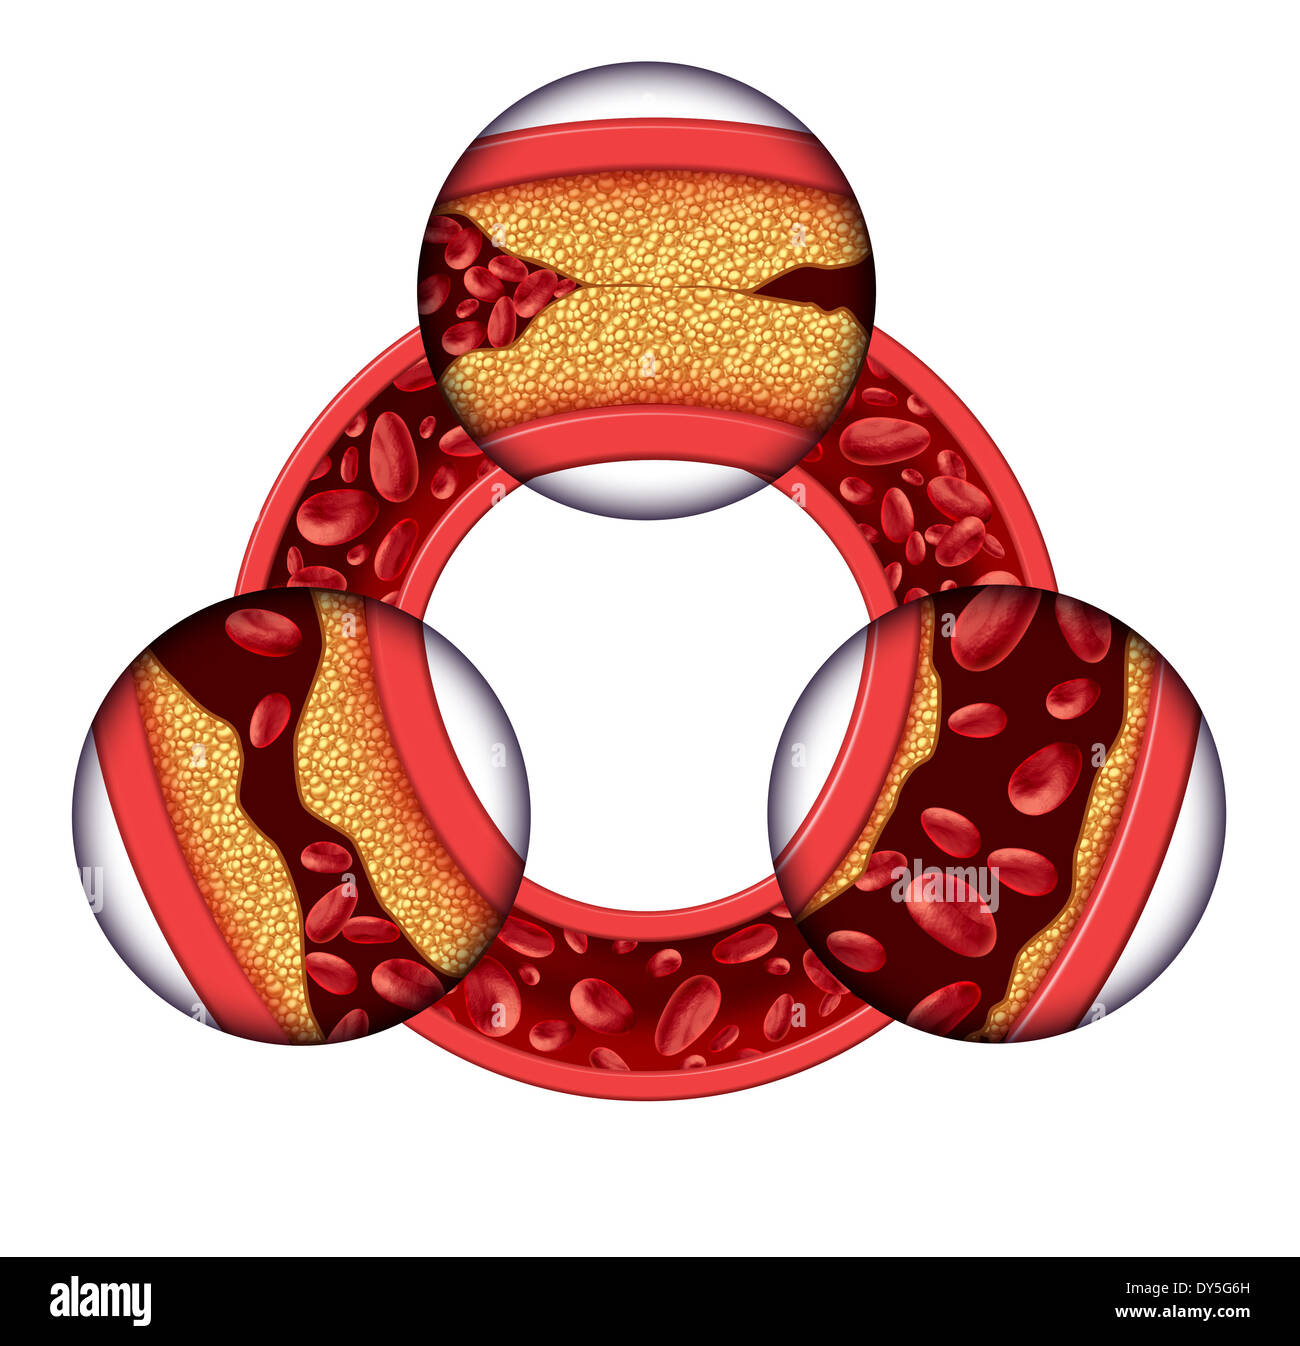 La malattia delle arterie coronarie concetto medico come una vena di circolare con la progressiva formazione di placca risultante in arterie intasate e aterosclerosi con con un tridimensionale di anatomia umana schema che mostra i rischi di accumulo di colesterolo. Foto Stock